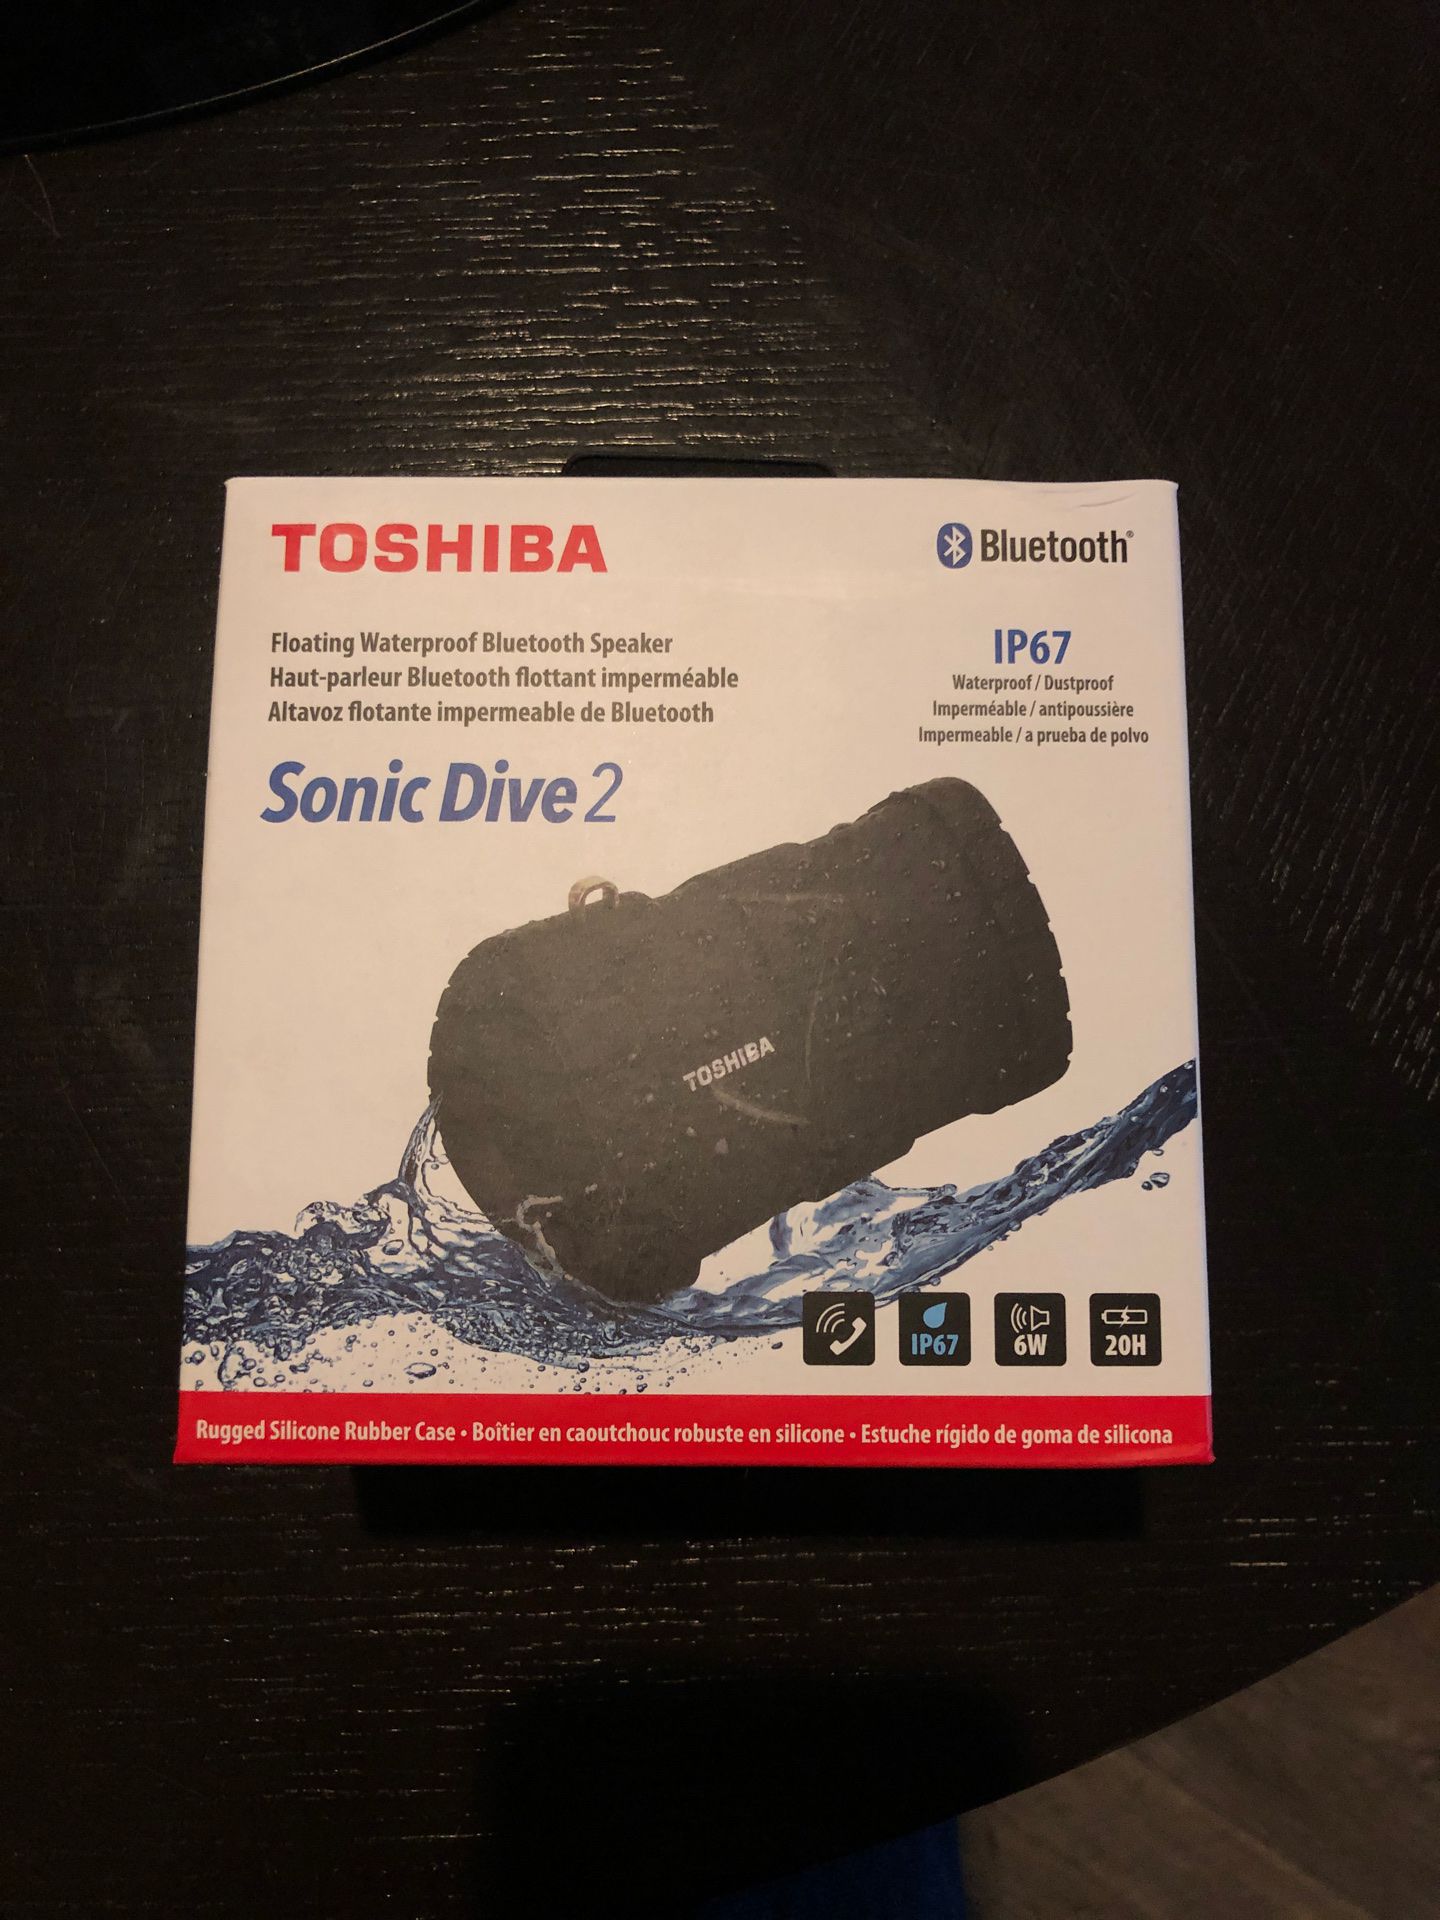 Toshiba Sonic Dive 2